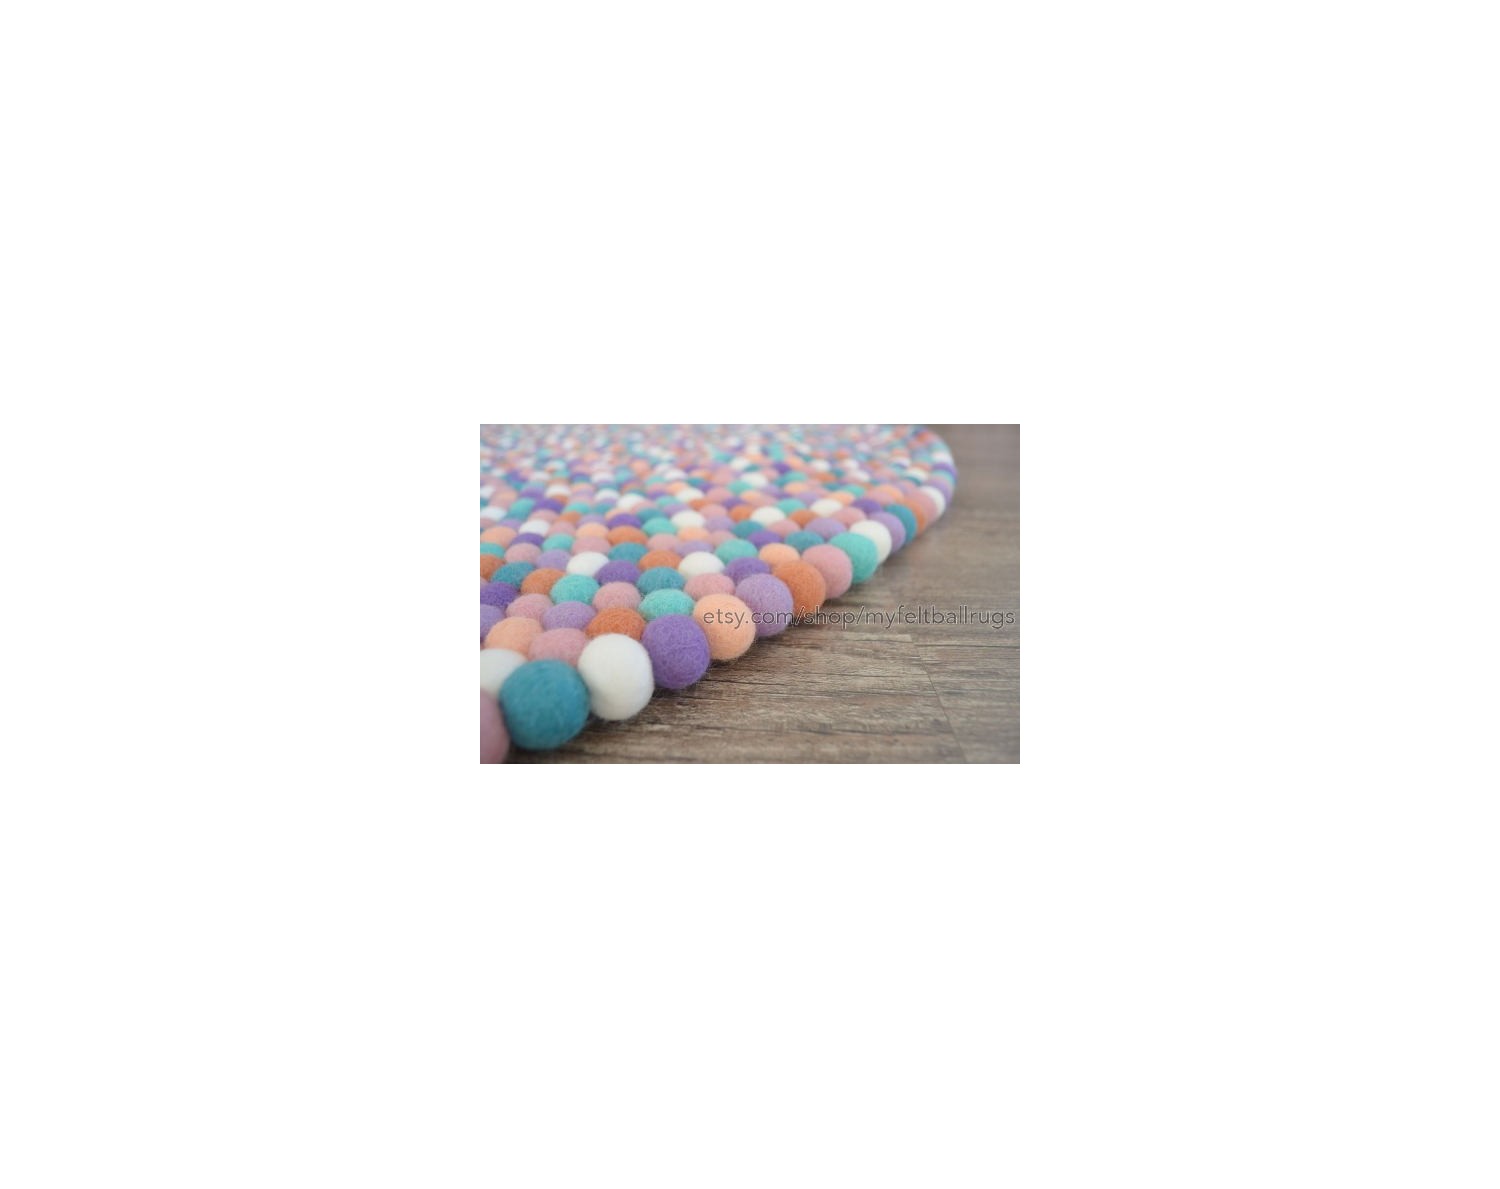 Handmade Five Color Felt Ball Rug - Felt & Yarn